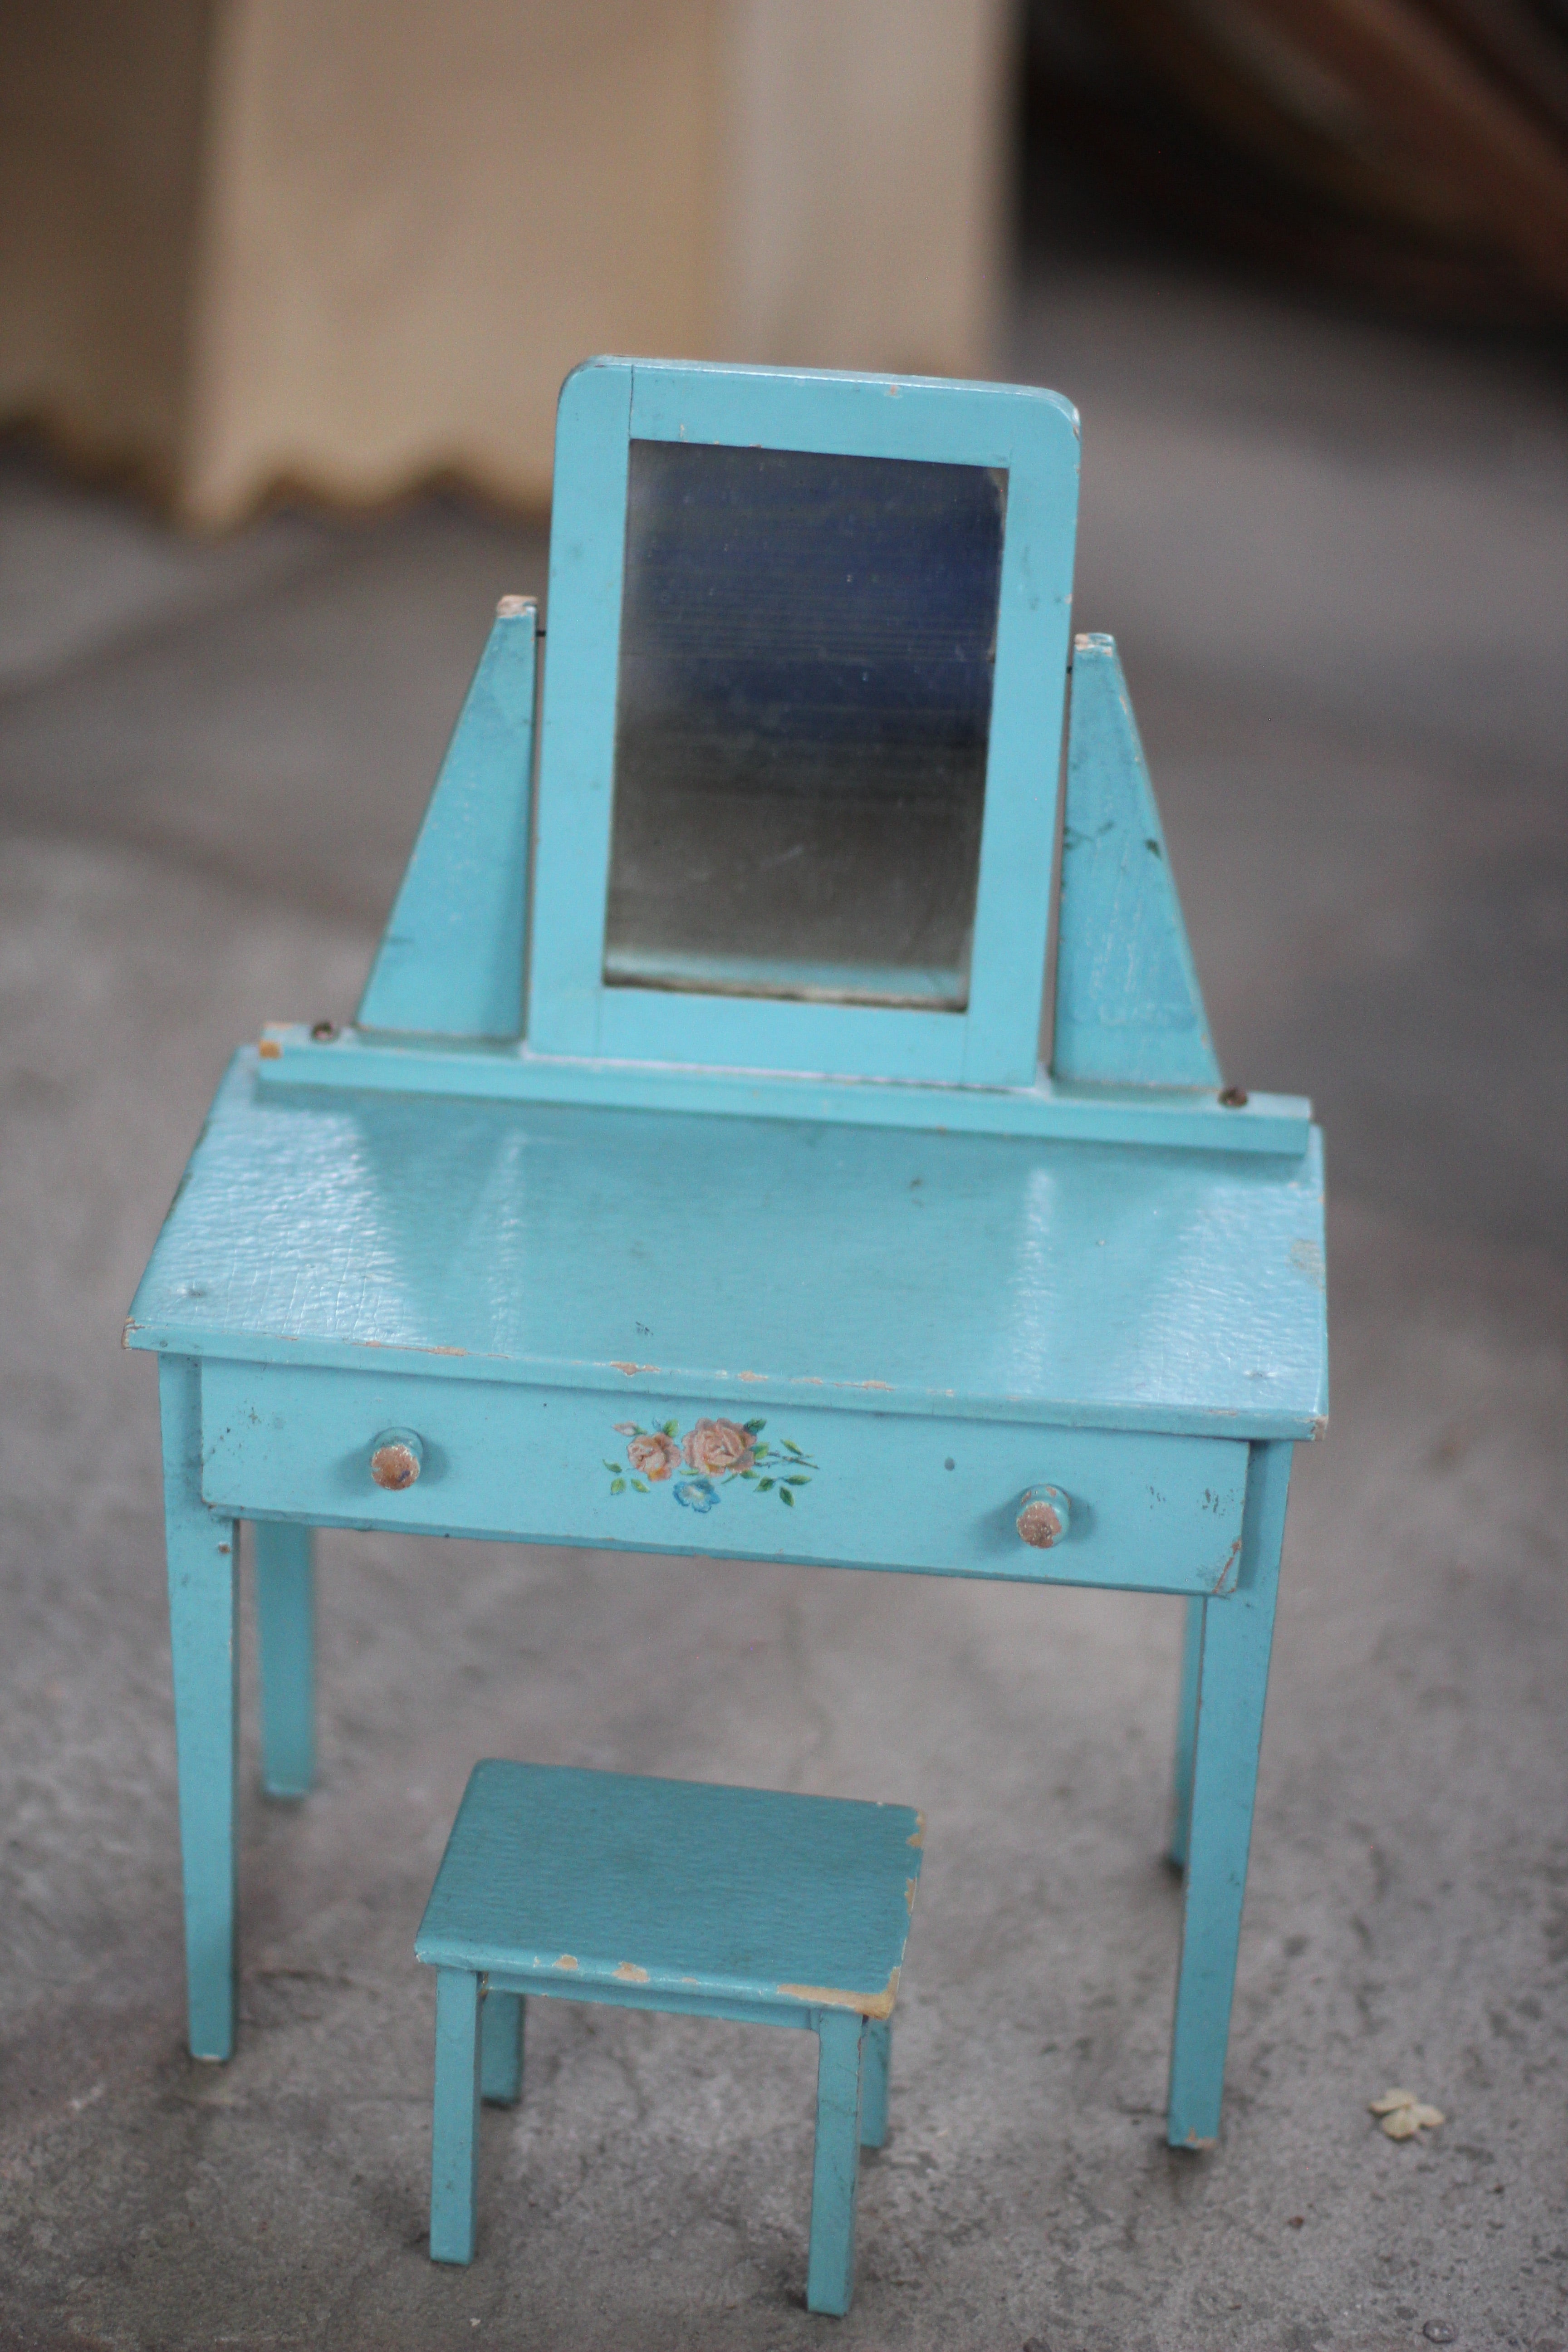 Antique Miniature Floral Blue Dresser